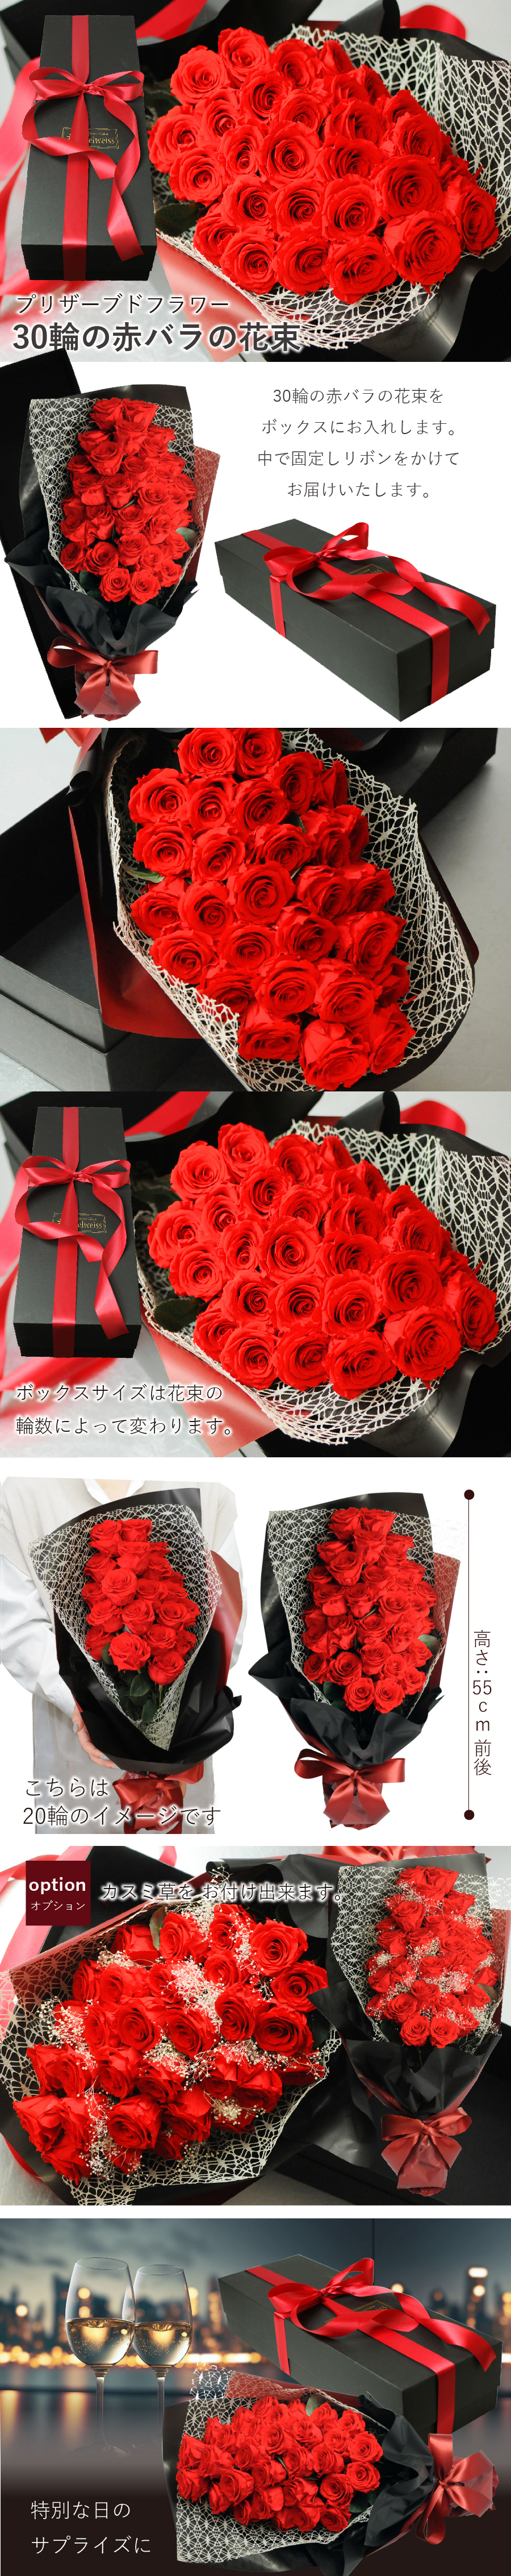 プリザーブドフラワー 30輪の赤バラの花束 ボックス